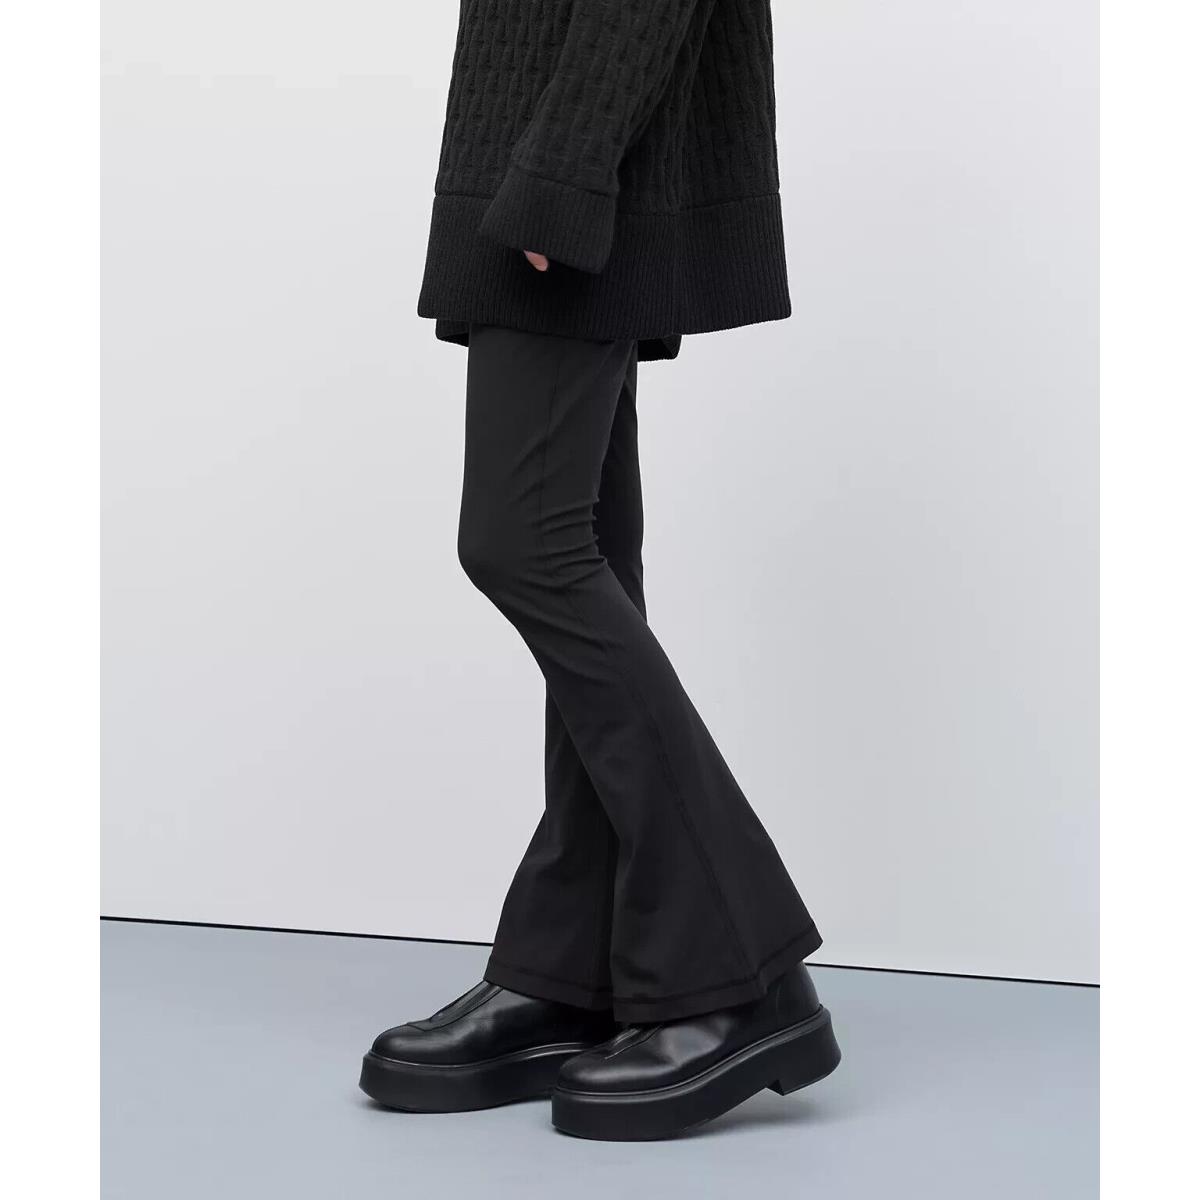 Lululemon Align High-rise Mini-flared Pant Regular Black Size 14. LW5EUSS